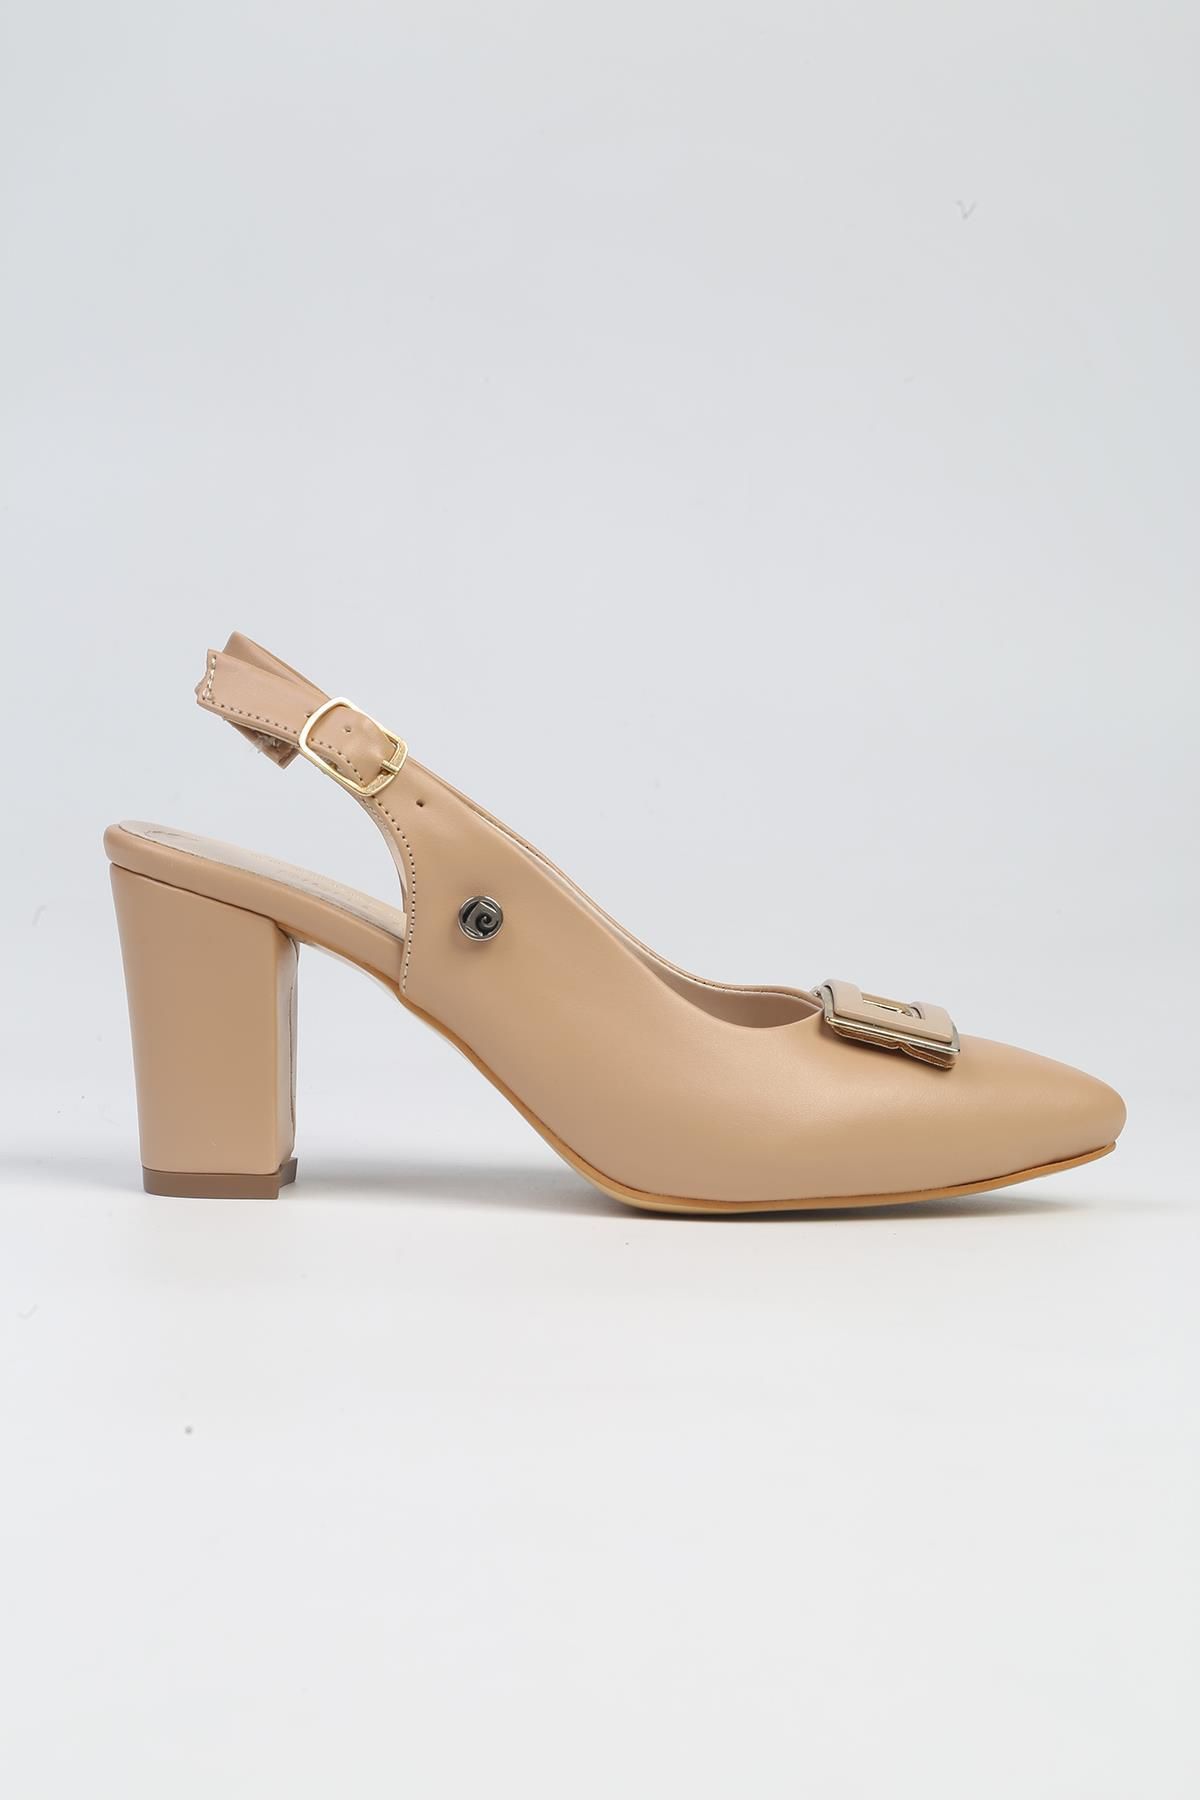 Pierre Cardin ® | PC-53113- 3592 Bej Cilt-Kadın Topuklu Ayakkabı